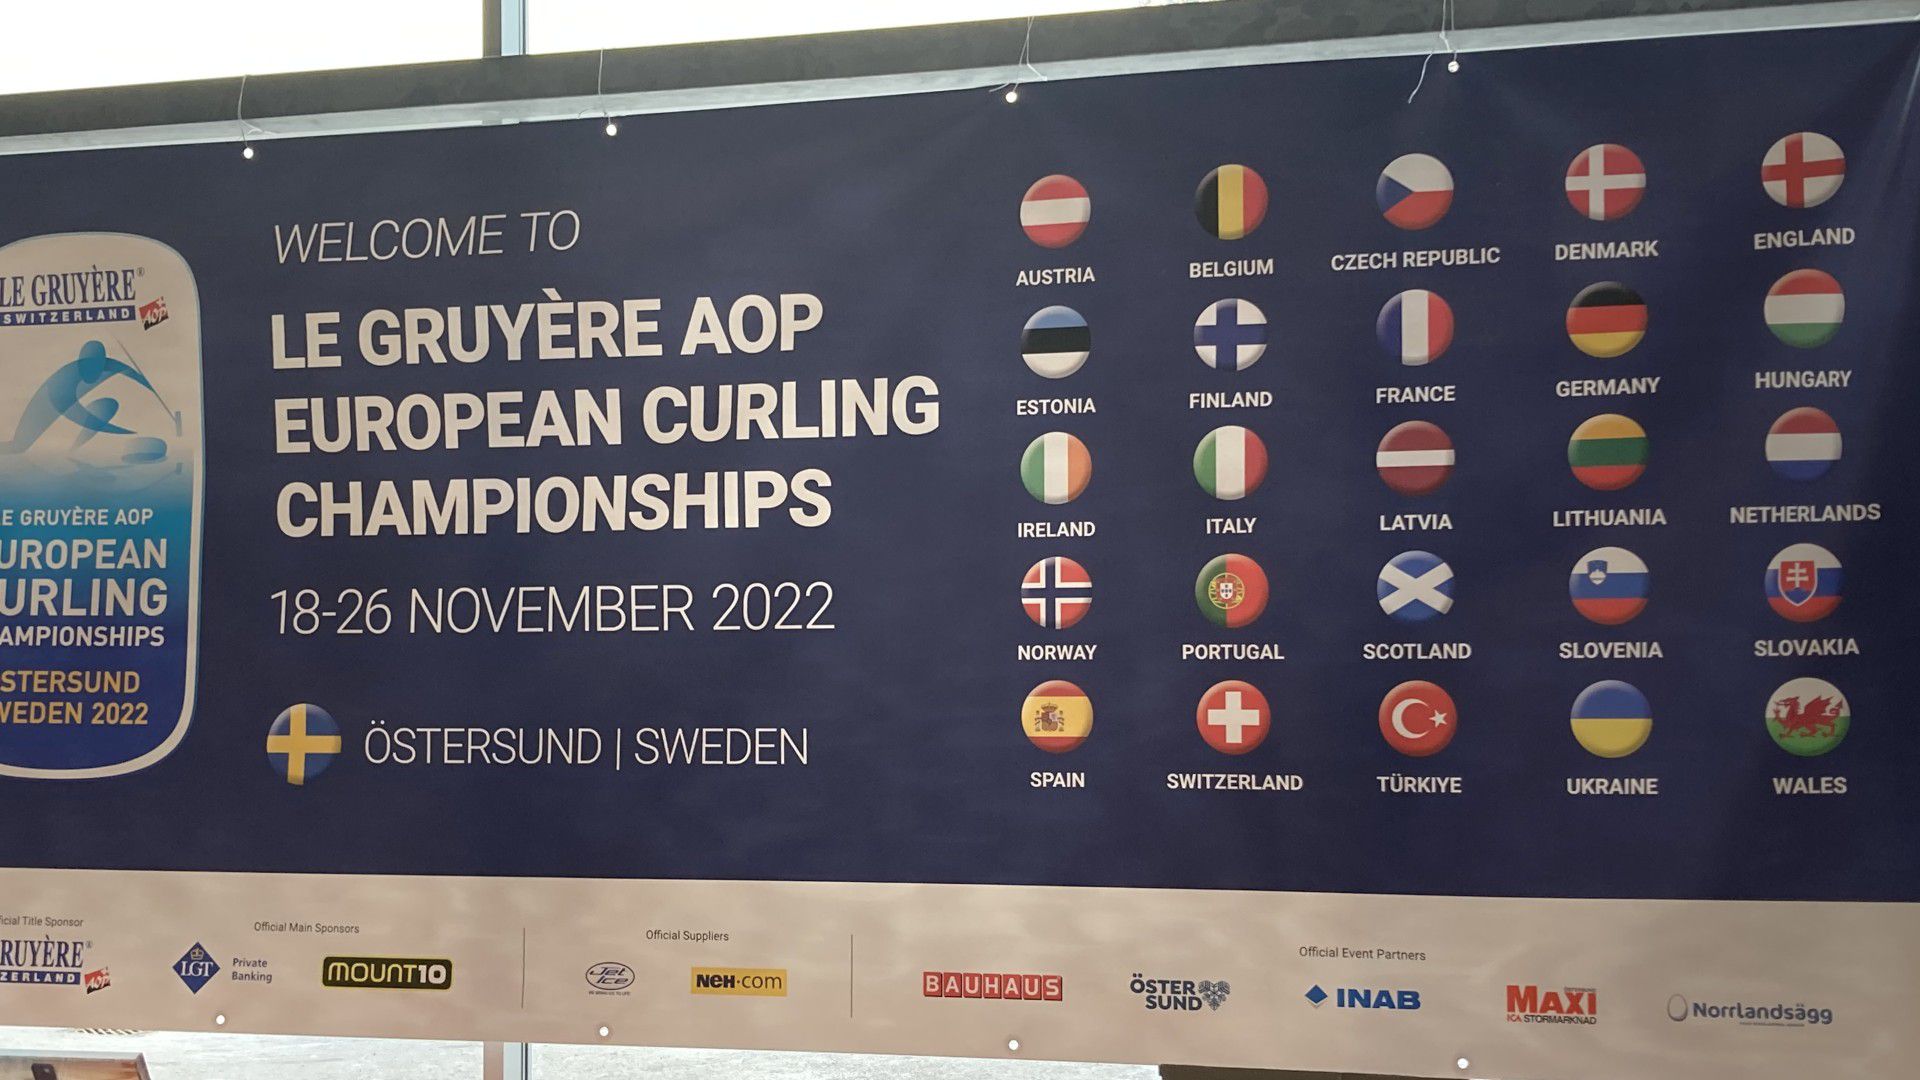 Győzelemmel folytatta szereplését a magyar férfi csapat a curling Európa-bajnokságon